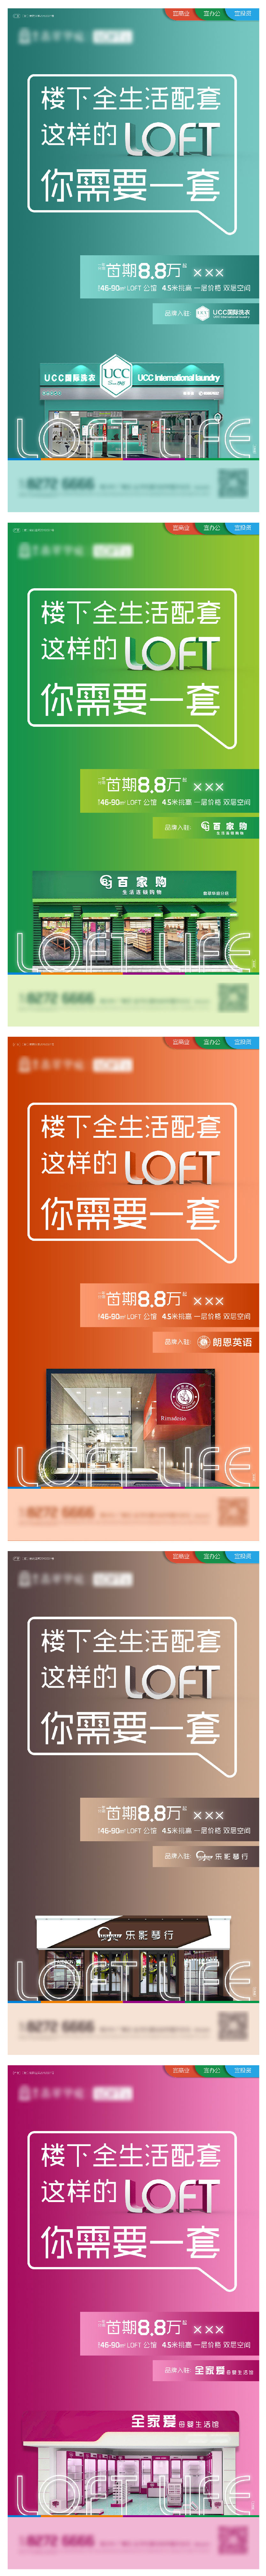 地产loft公寓系列海报